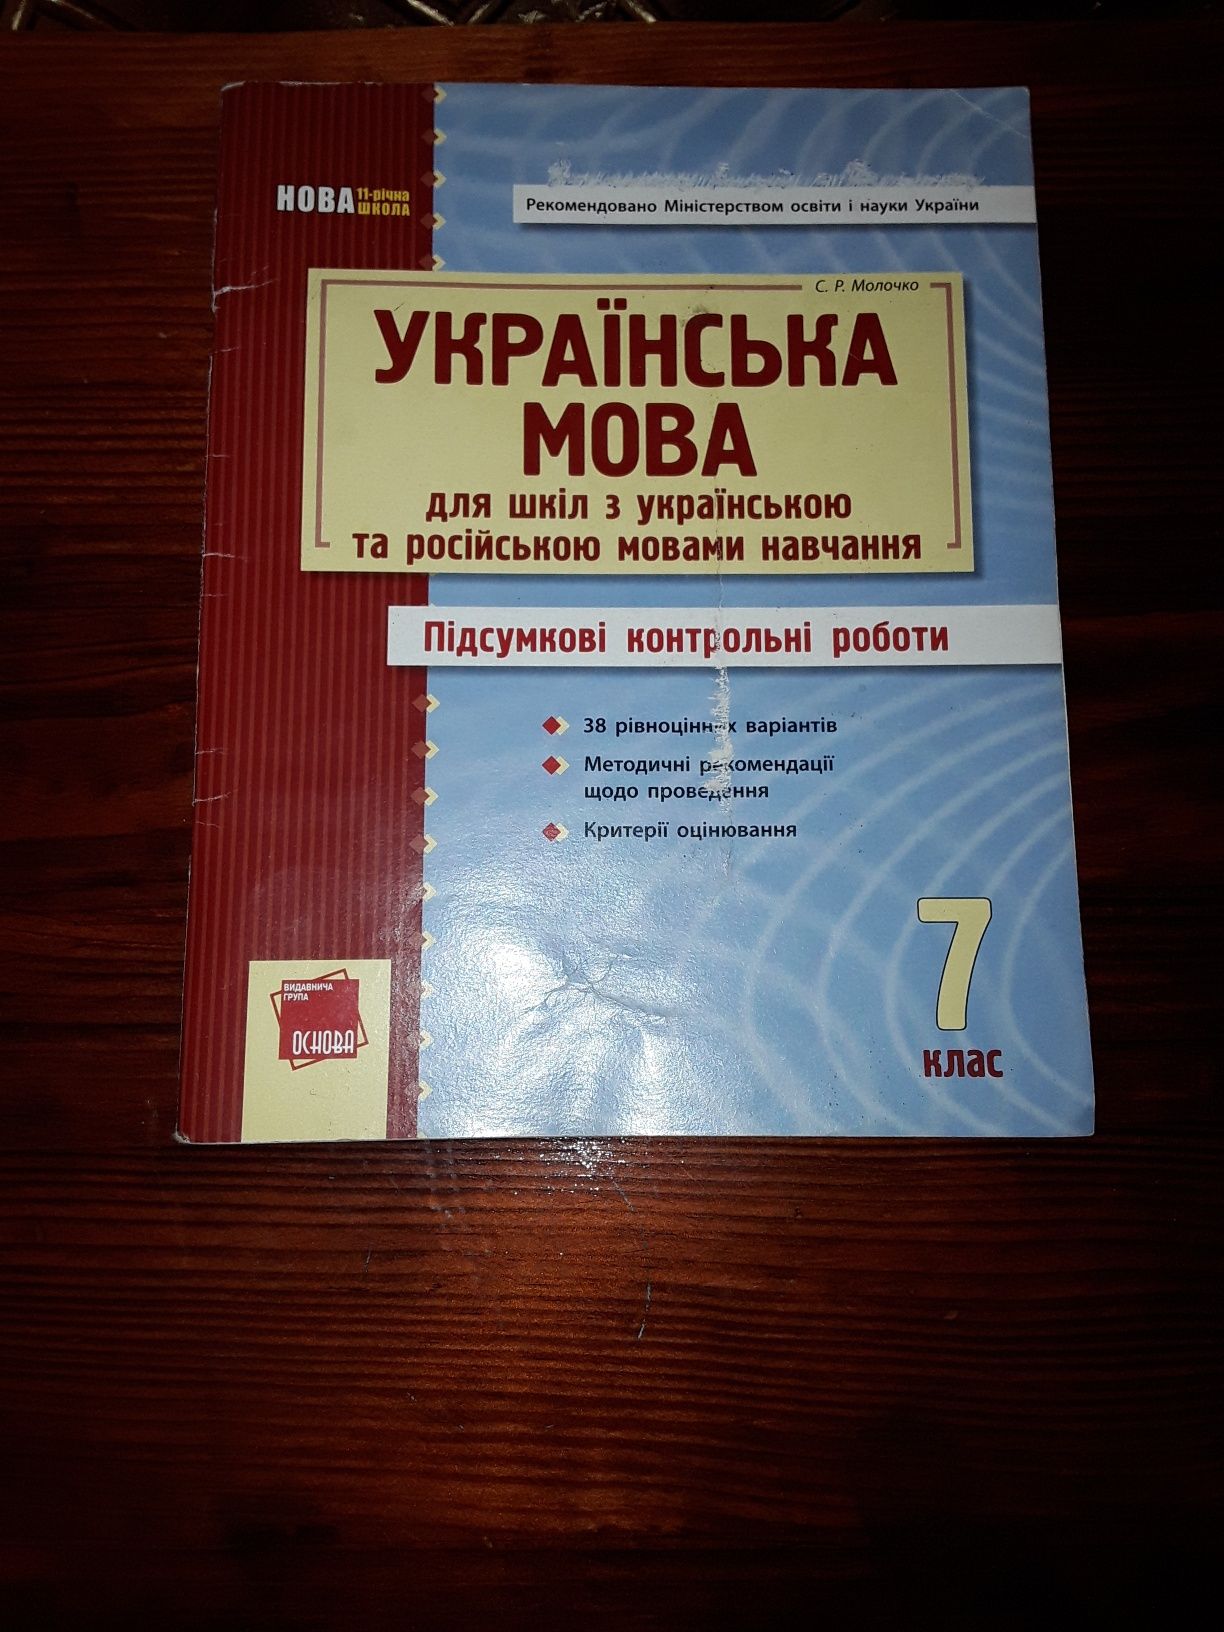 Підсумкові контрольні роботи з Української мови 7класу